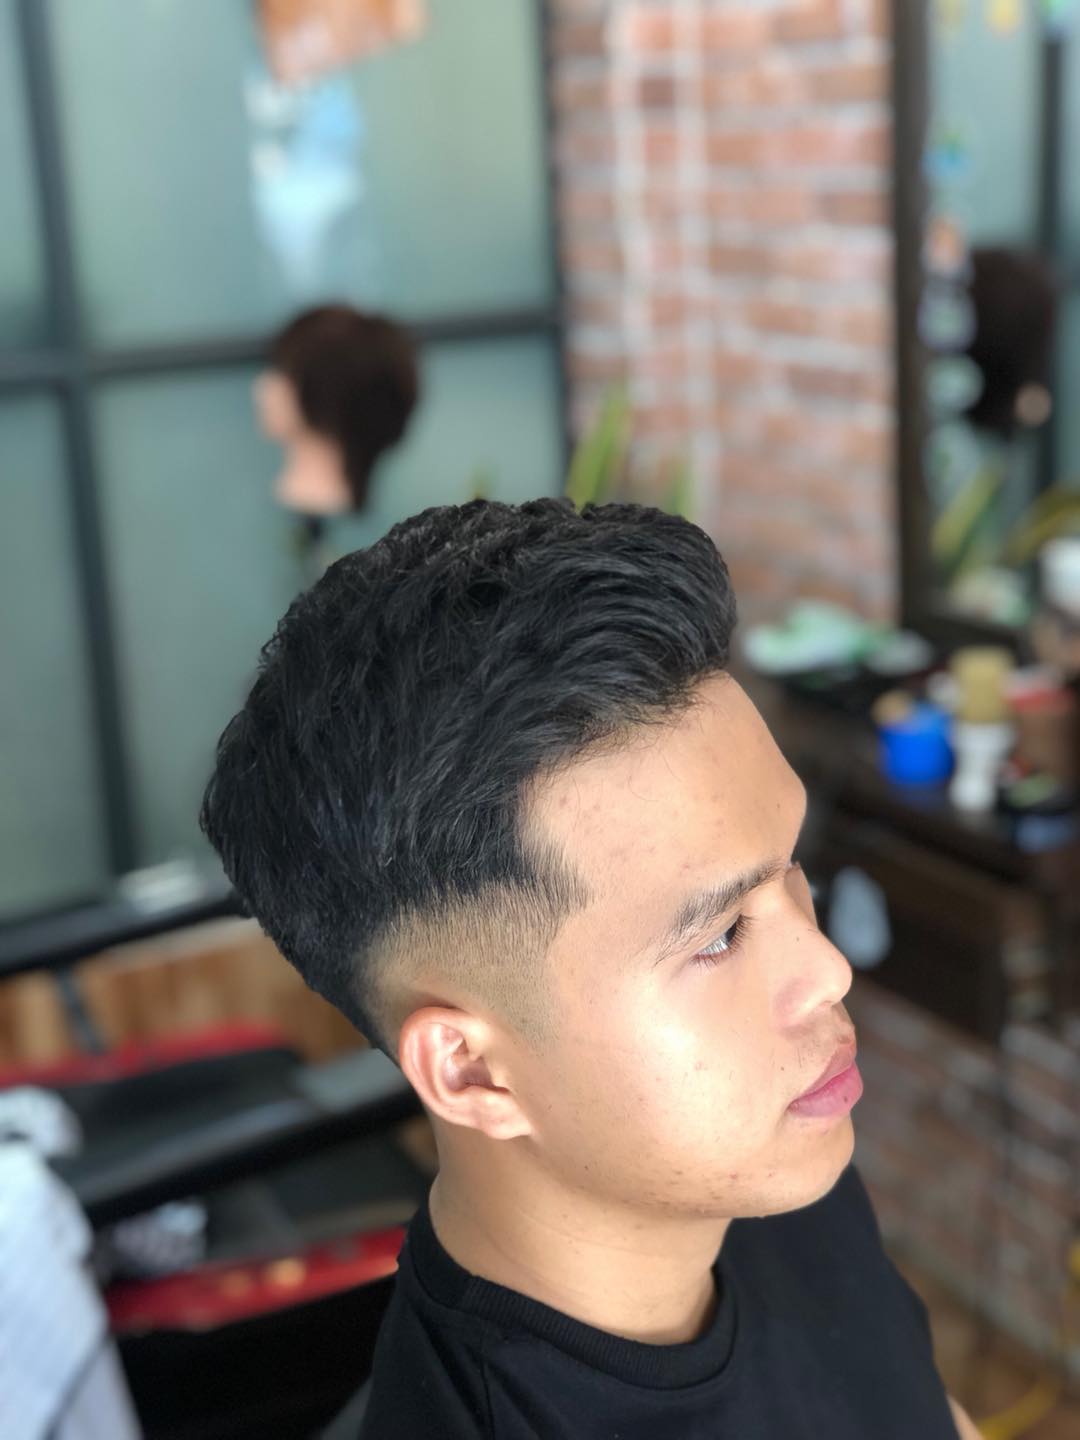 Top 10 Tiệm hớt tóc nam chuyên nghiệp tại Nha Trang Khánh Hòa  Thợ Sửa Máy  Giặt  Tìm Thợ Sửa Máy Giặt Ở Đây   Dịch Vụ Bách khoa Sửa Chữa Chuyên  nghiệp